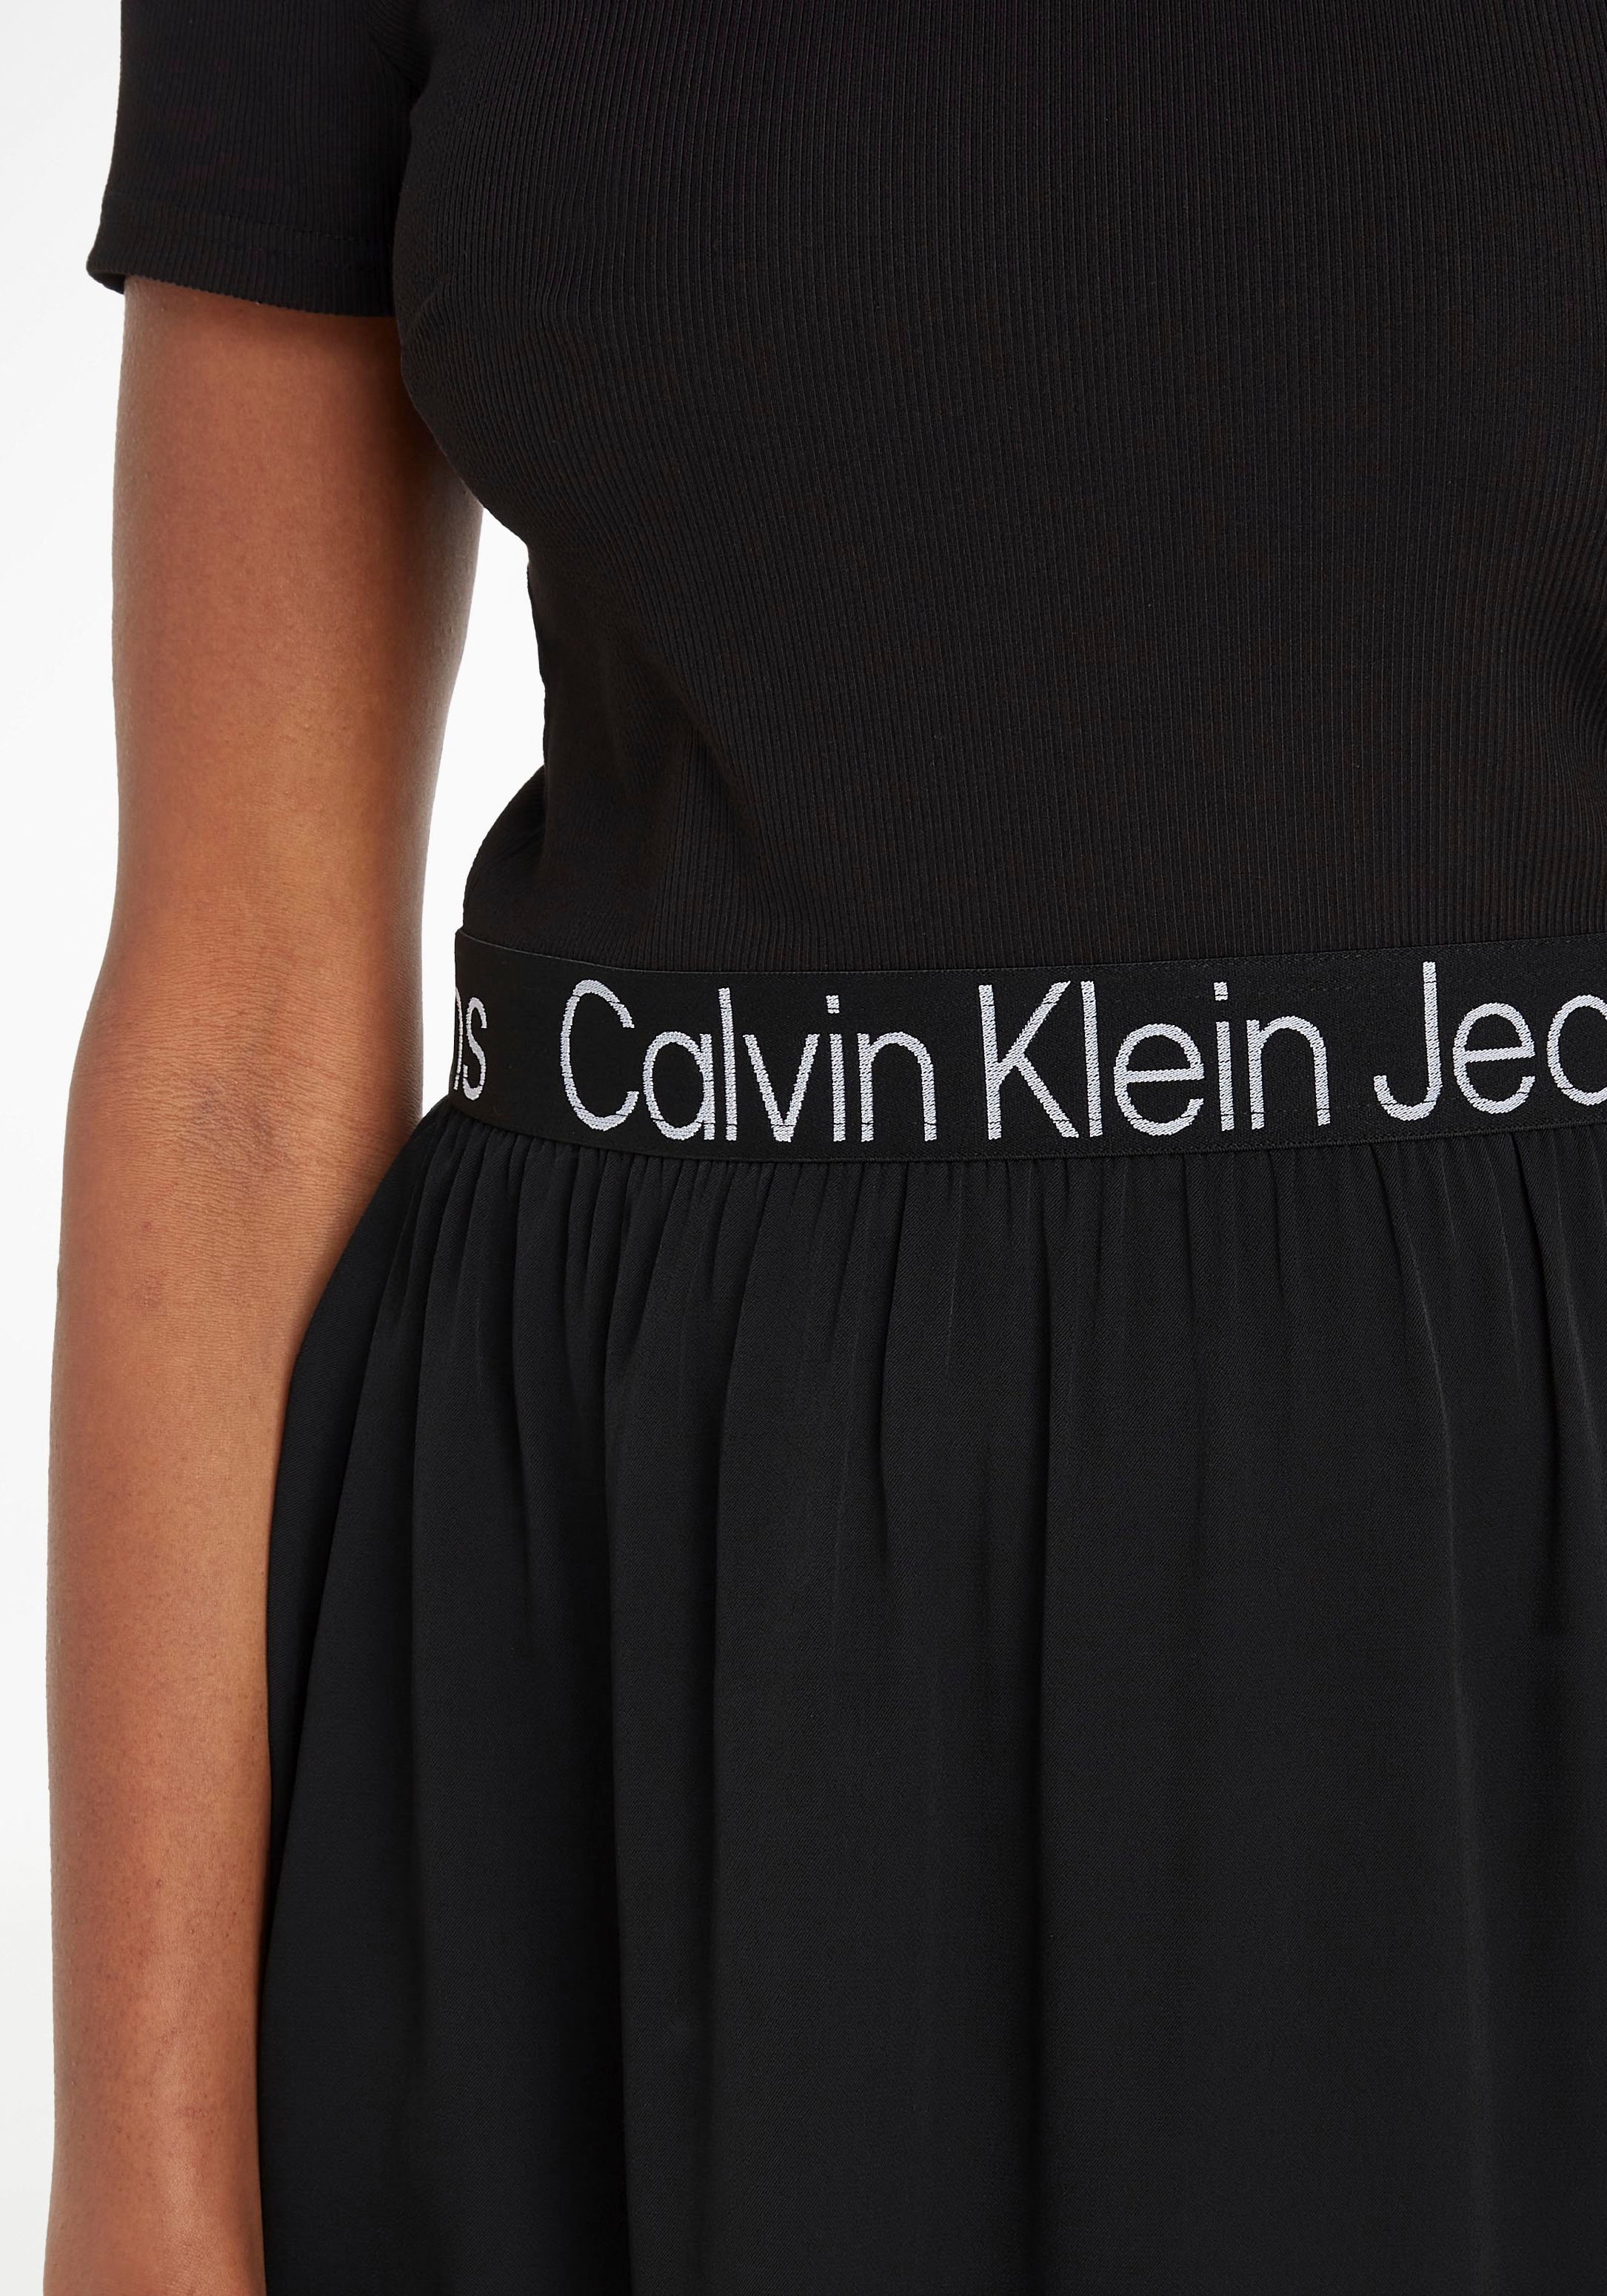 online im Calvin Jelmoli-Versand Schweiz bei 2-in-1-Kleid, Klein Jeans kaufen Materialmix